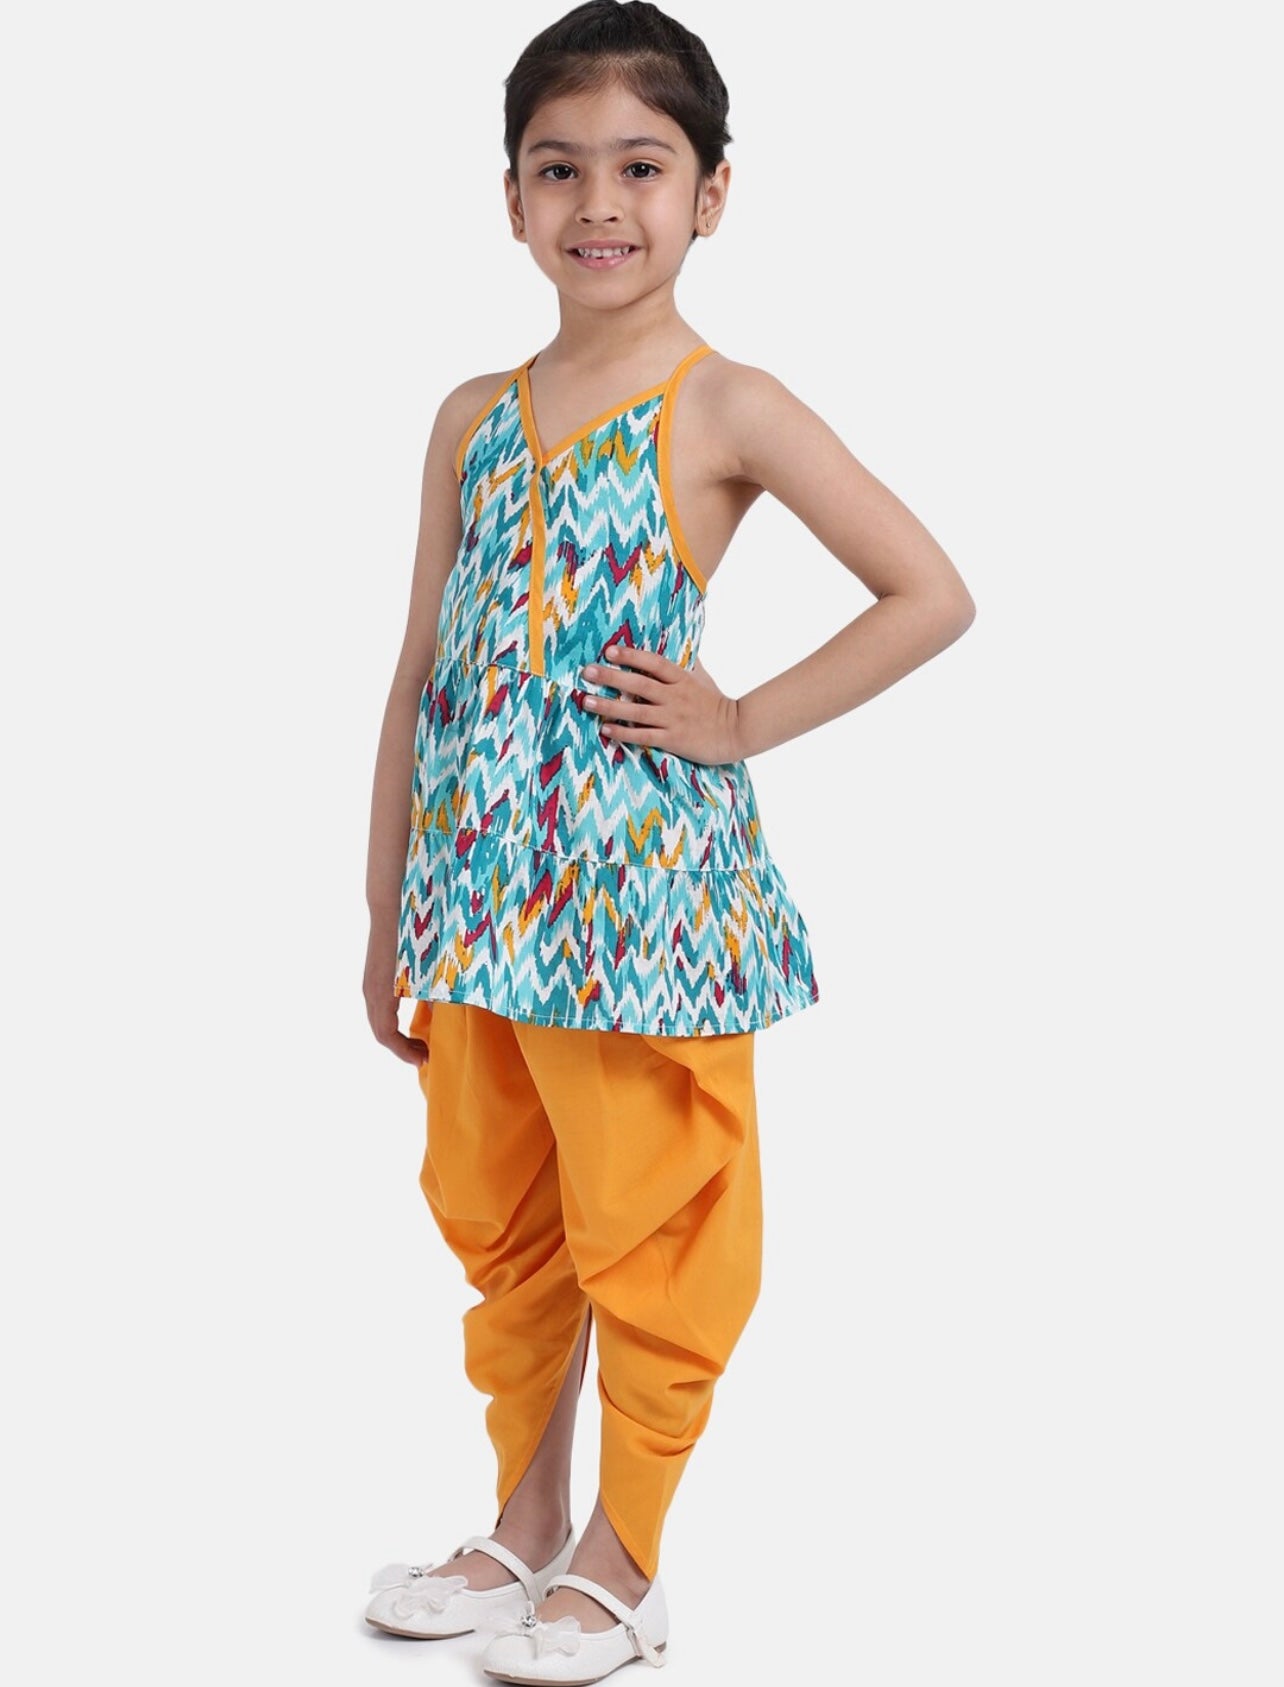 Indi Kids Girls Ready to wear Kurta set